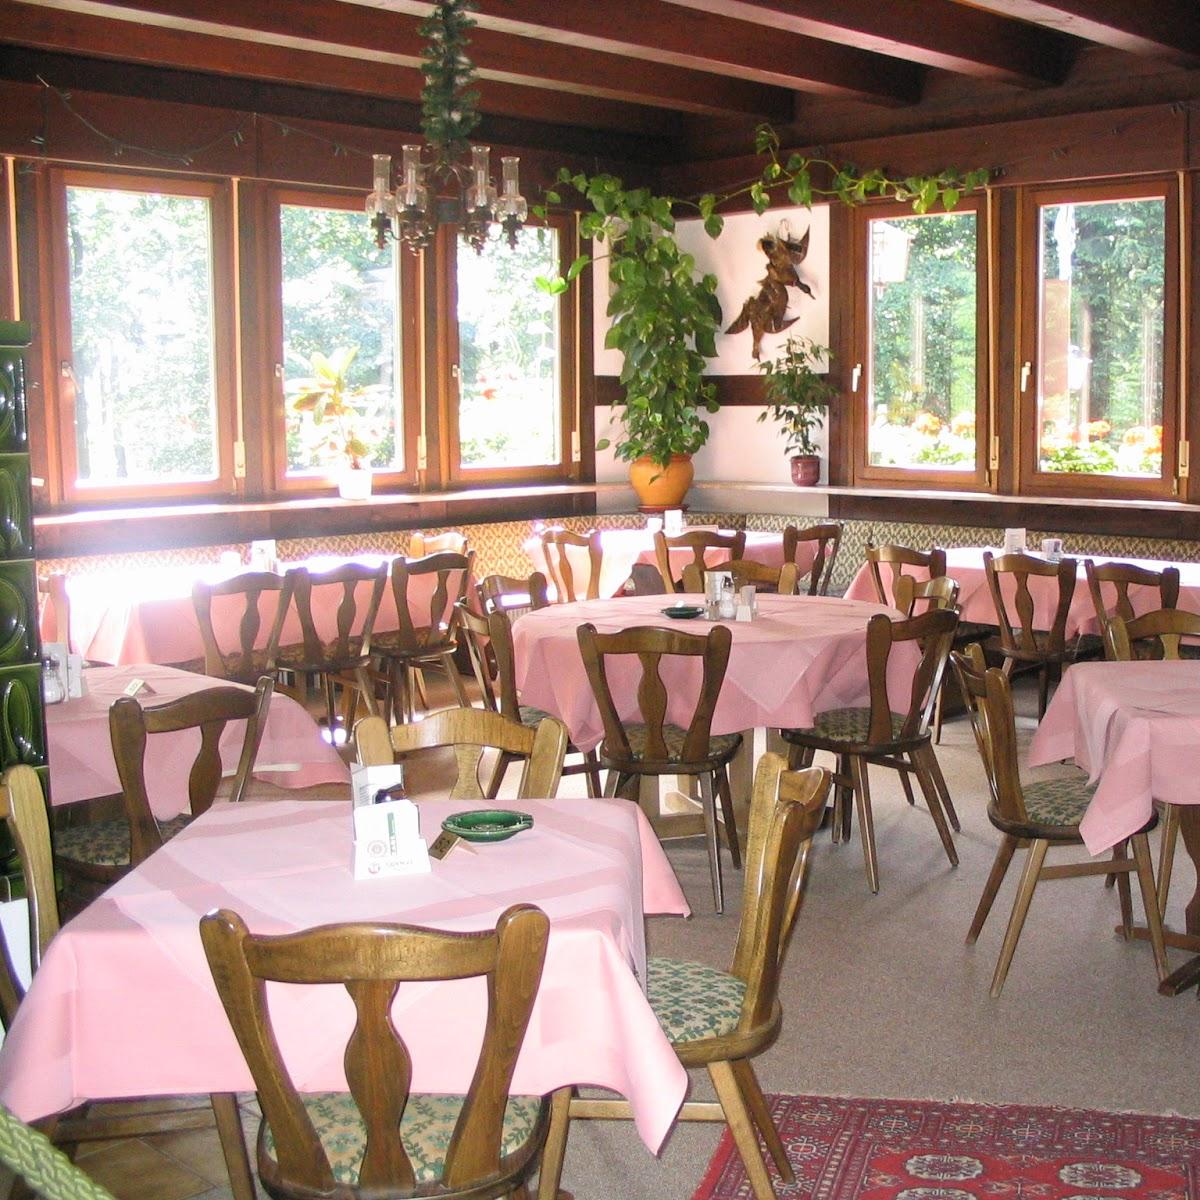 Restaurant "Höhengaststätte Zum Weißen Stein" in Dossenheim